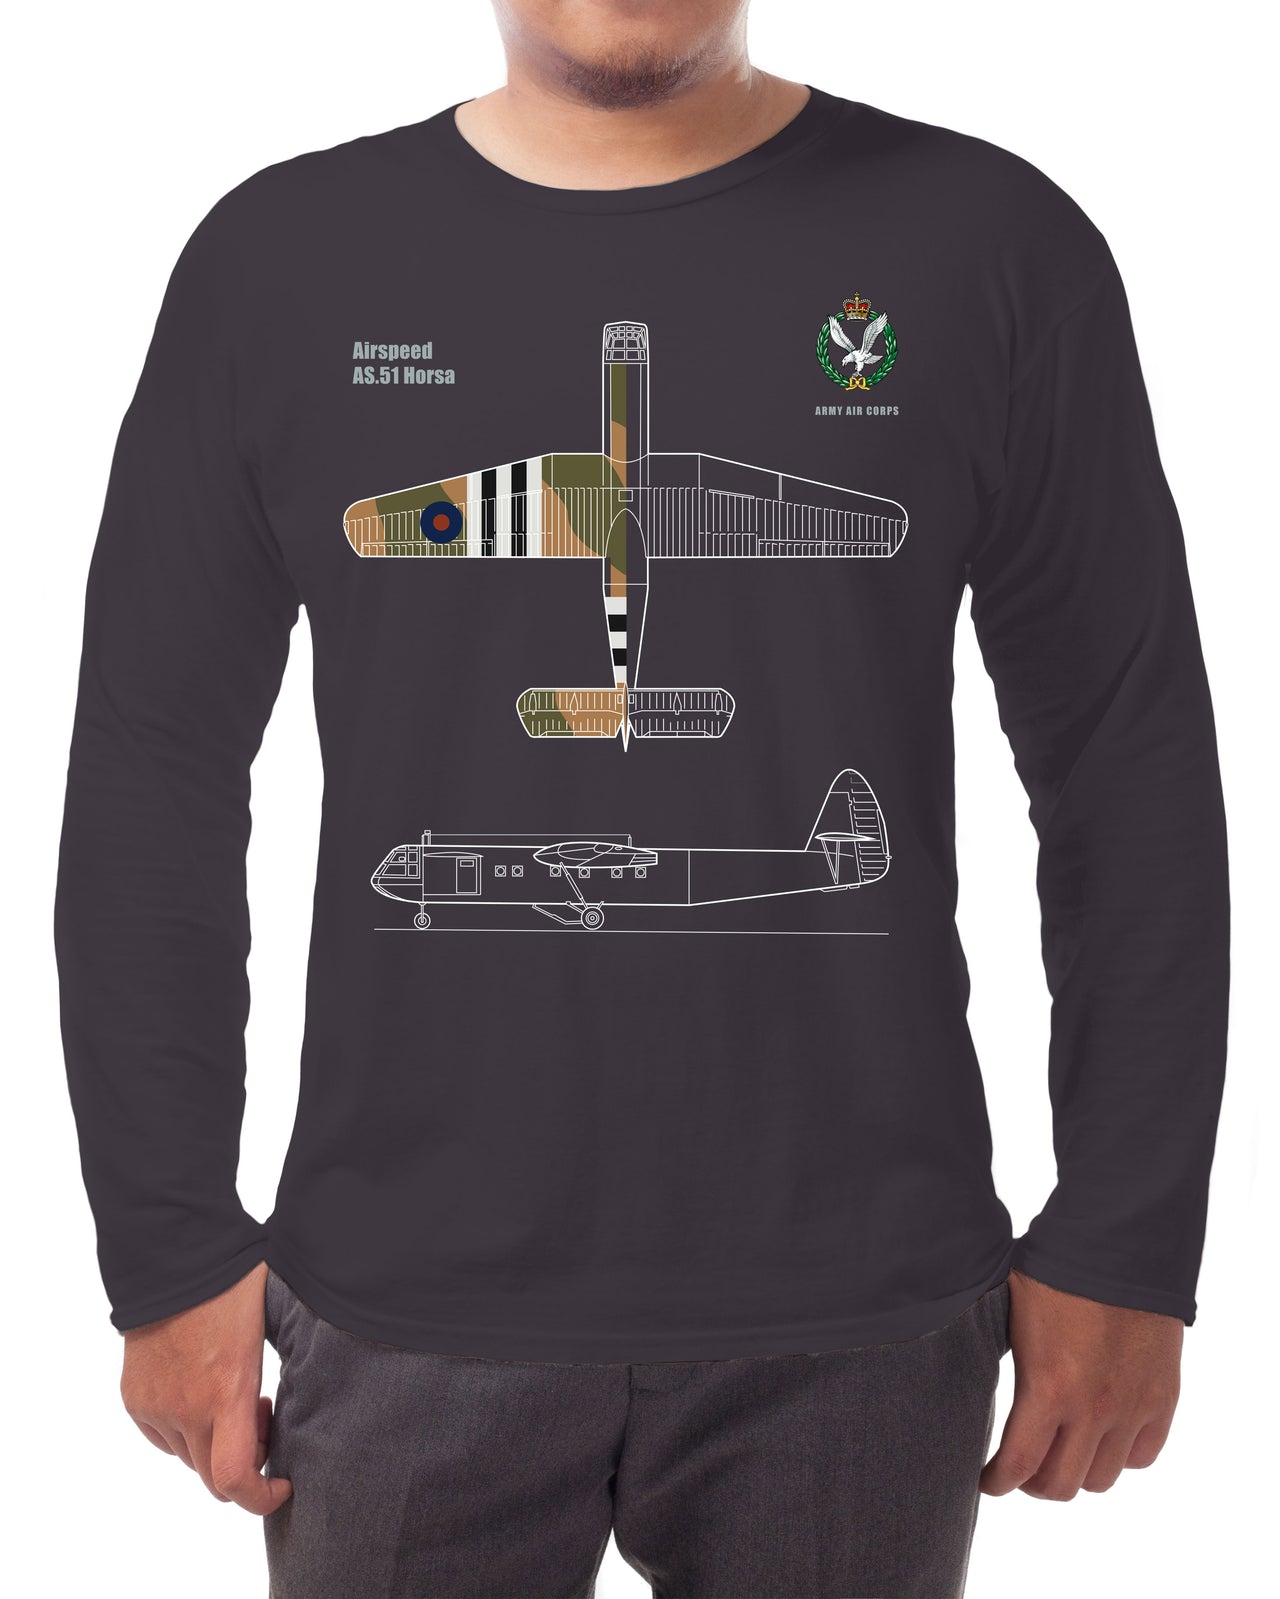 Horsa Glider - Long-sleeve T-shirt